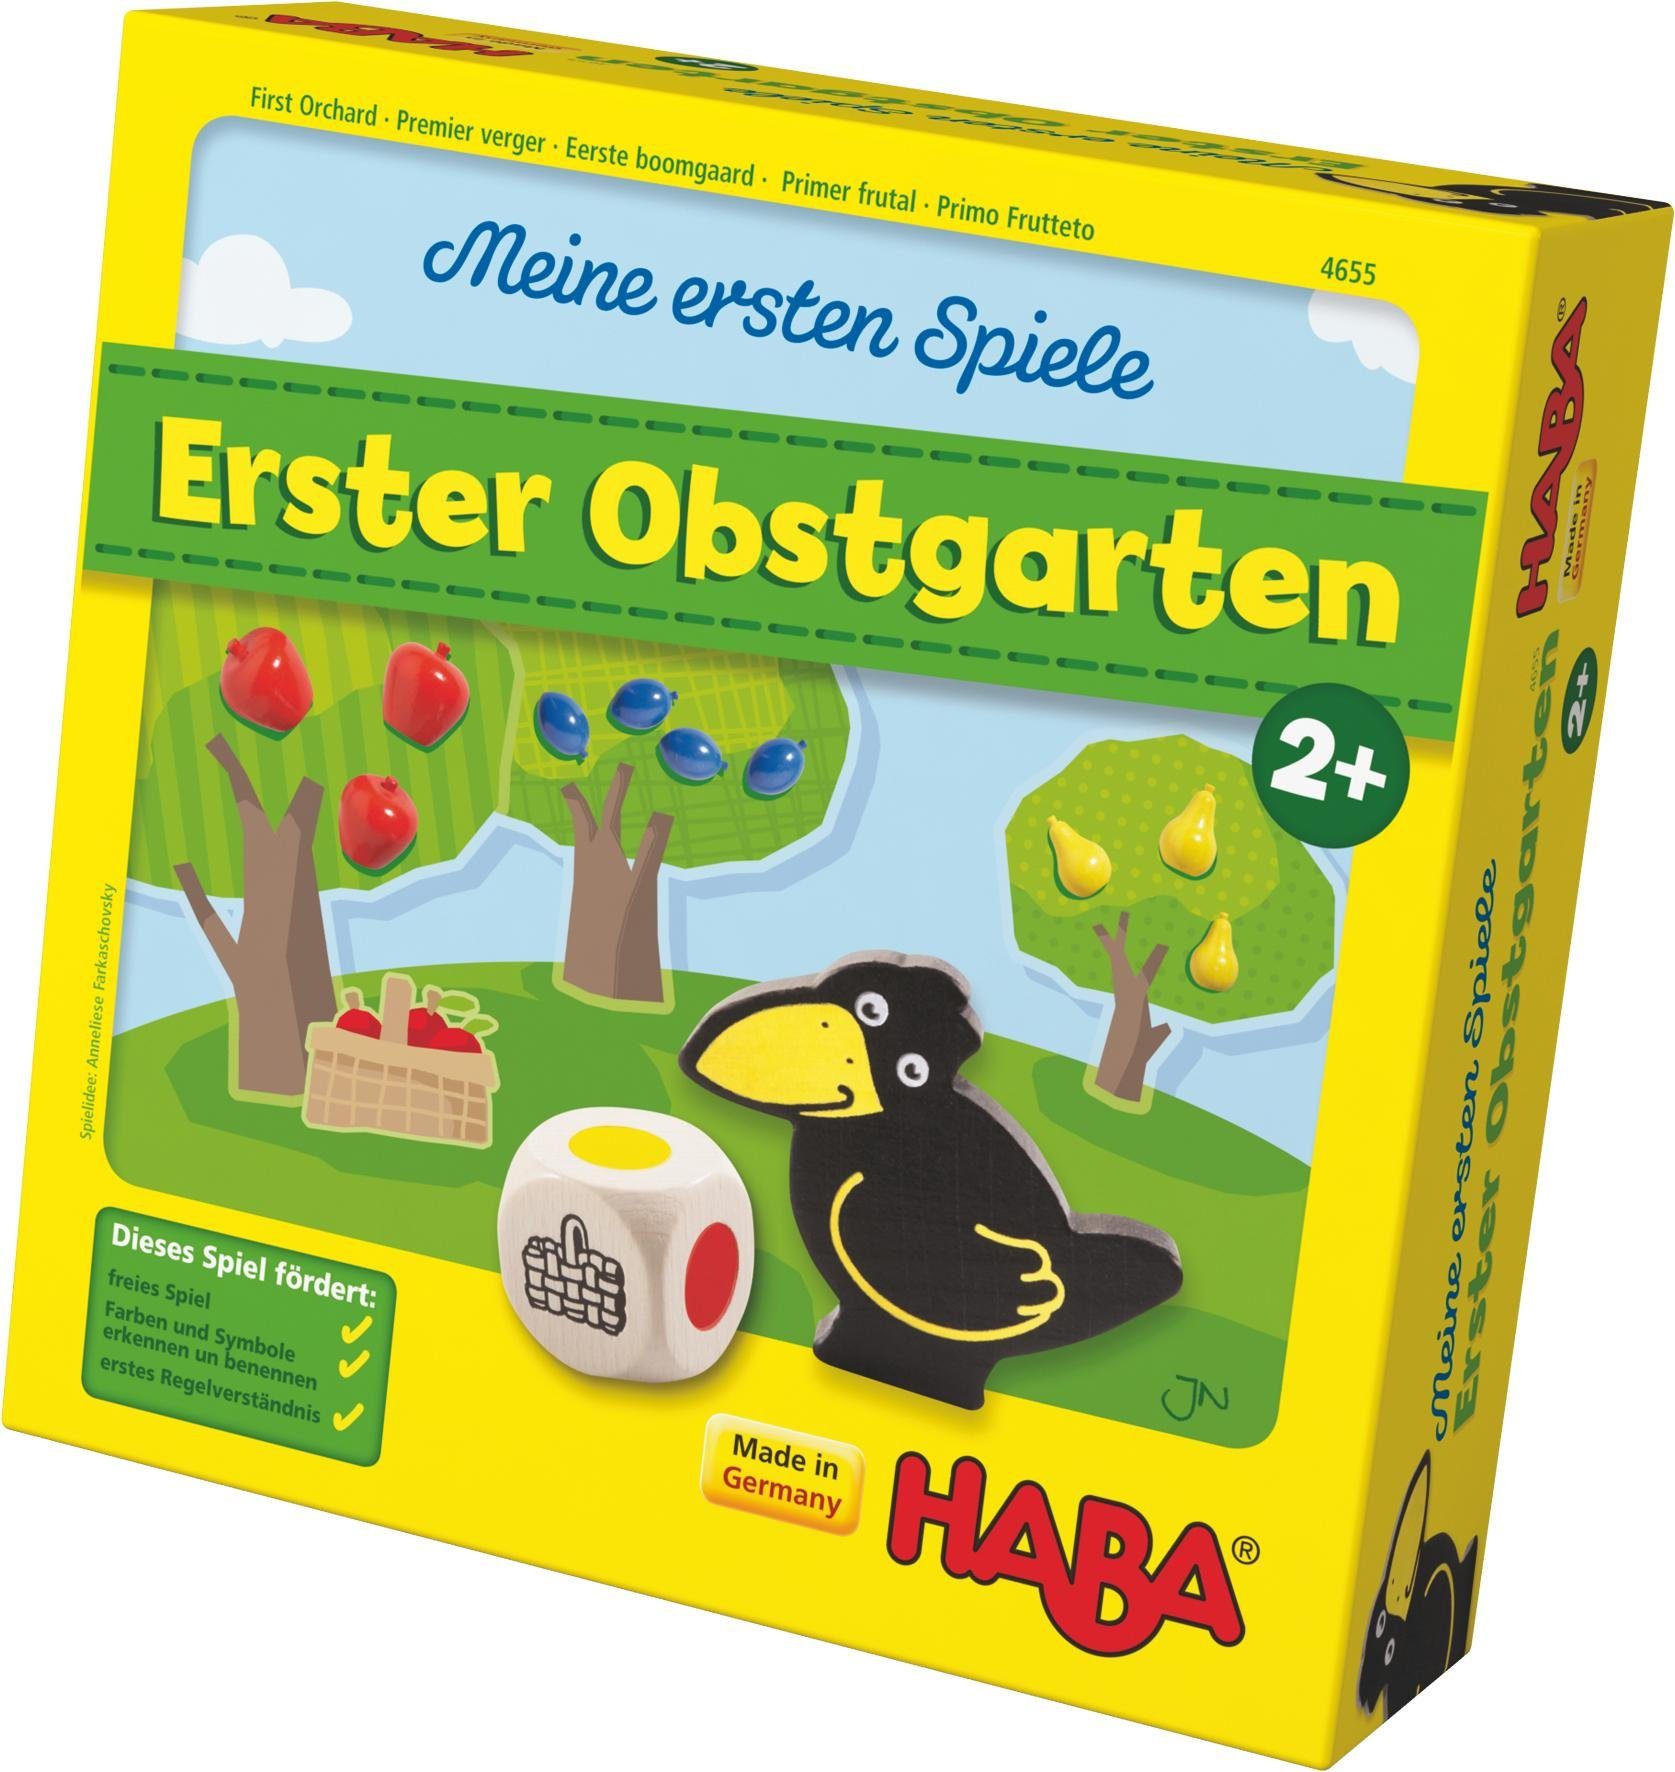 Haba Spiel, Meine ersten Spiele - Erster Obstgarten, Made in Germany